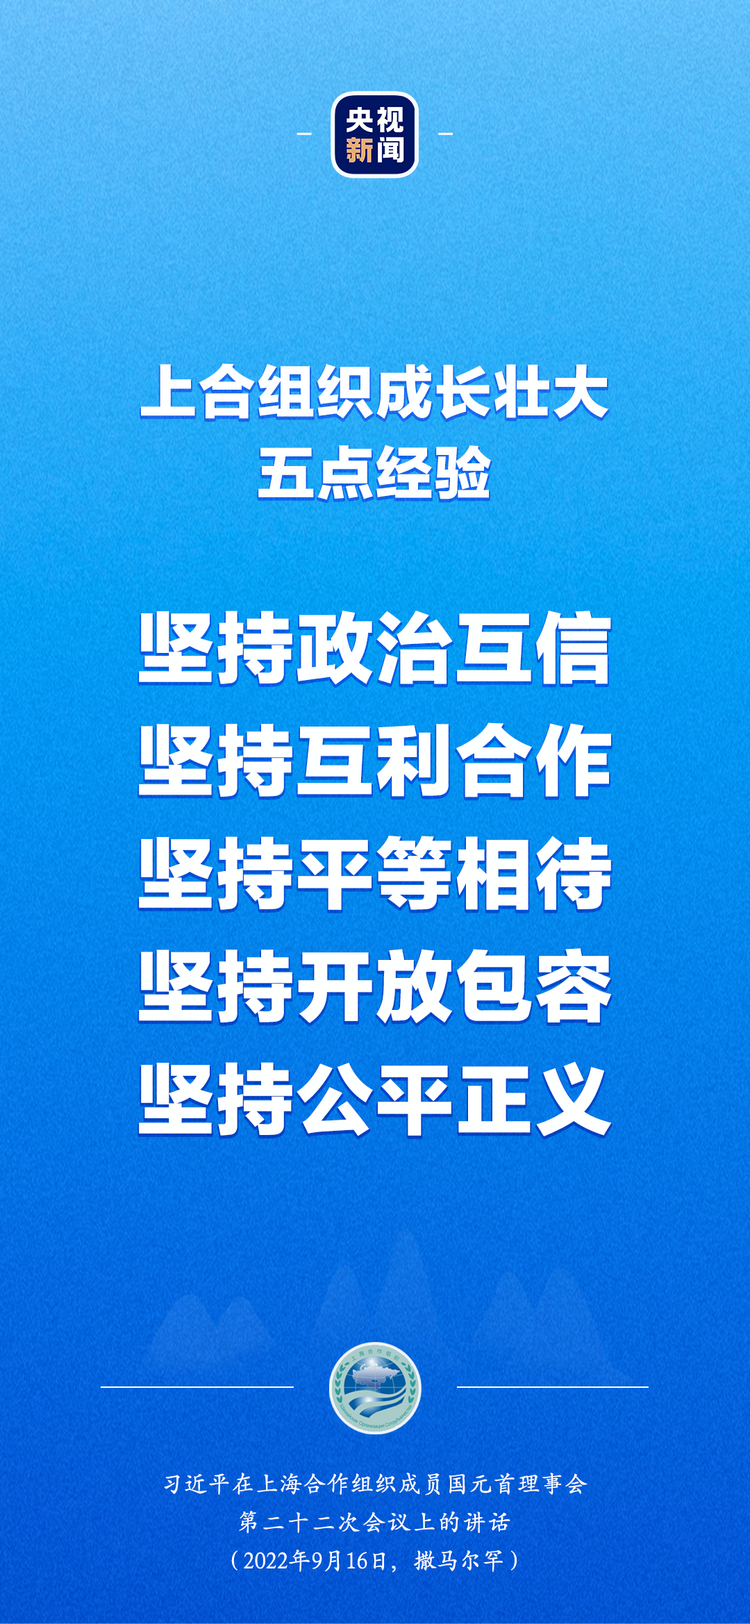 习近平出席上合组织峰会：“上海精神”是上合组织必须长期坚持的根本遵循